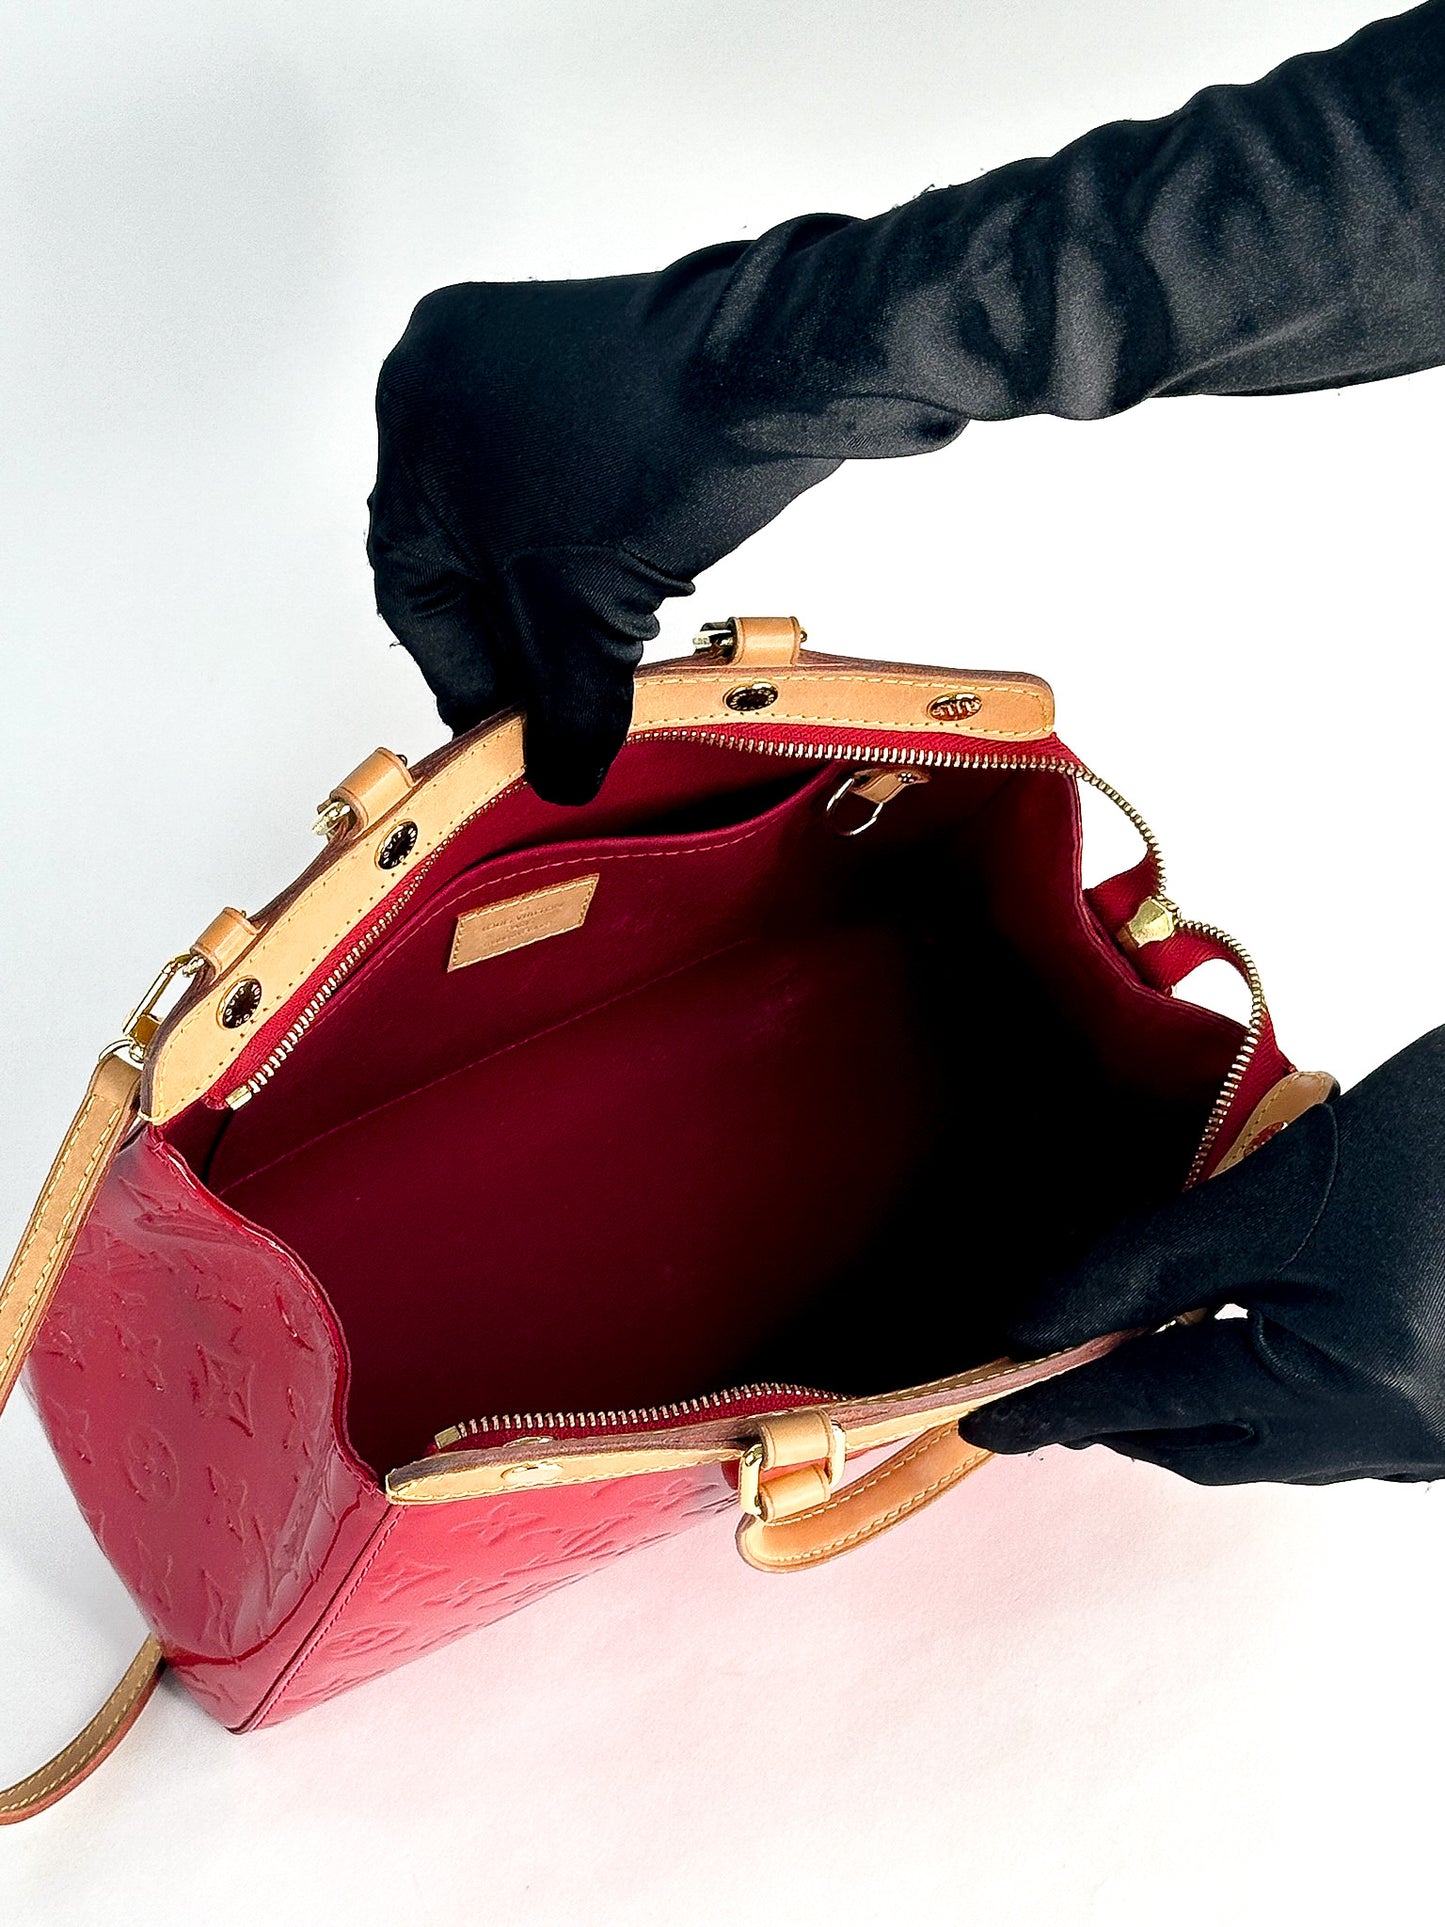 Louis Vuitton Pomme D'Amour Monogram Vernis Brea PM Bag